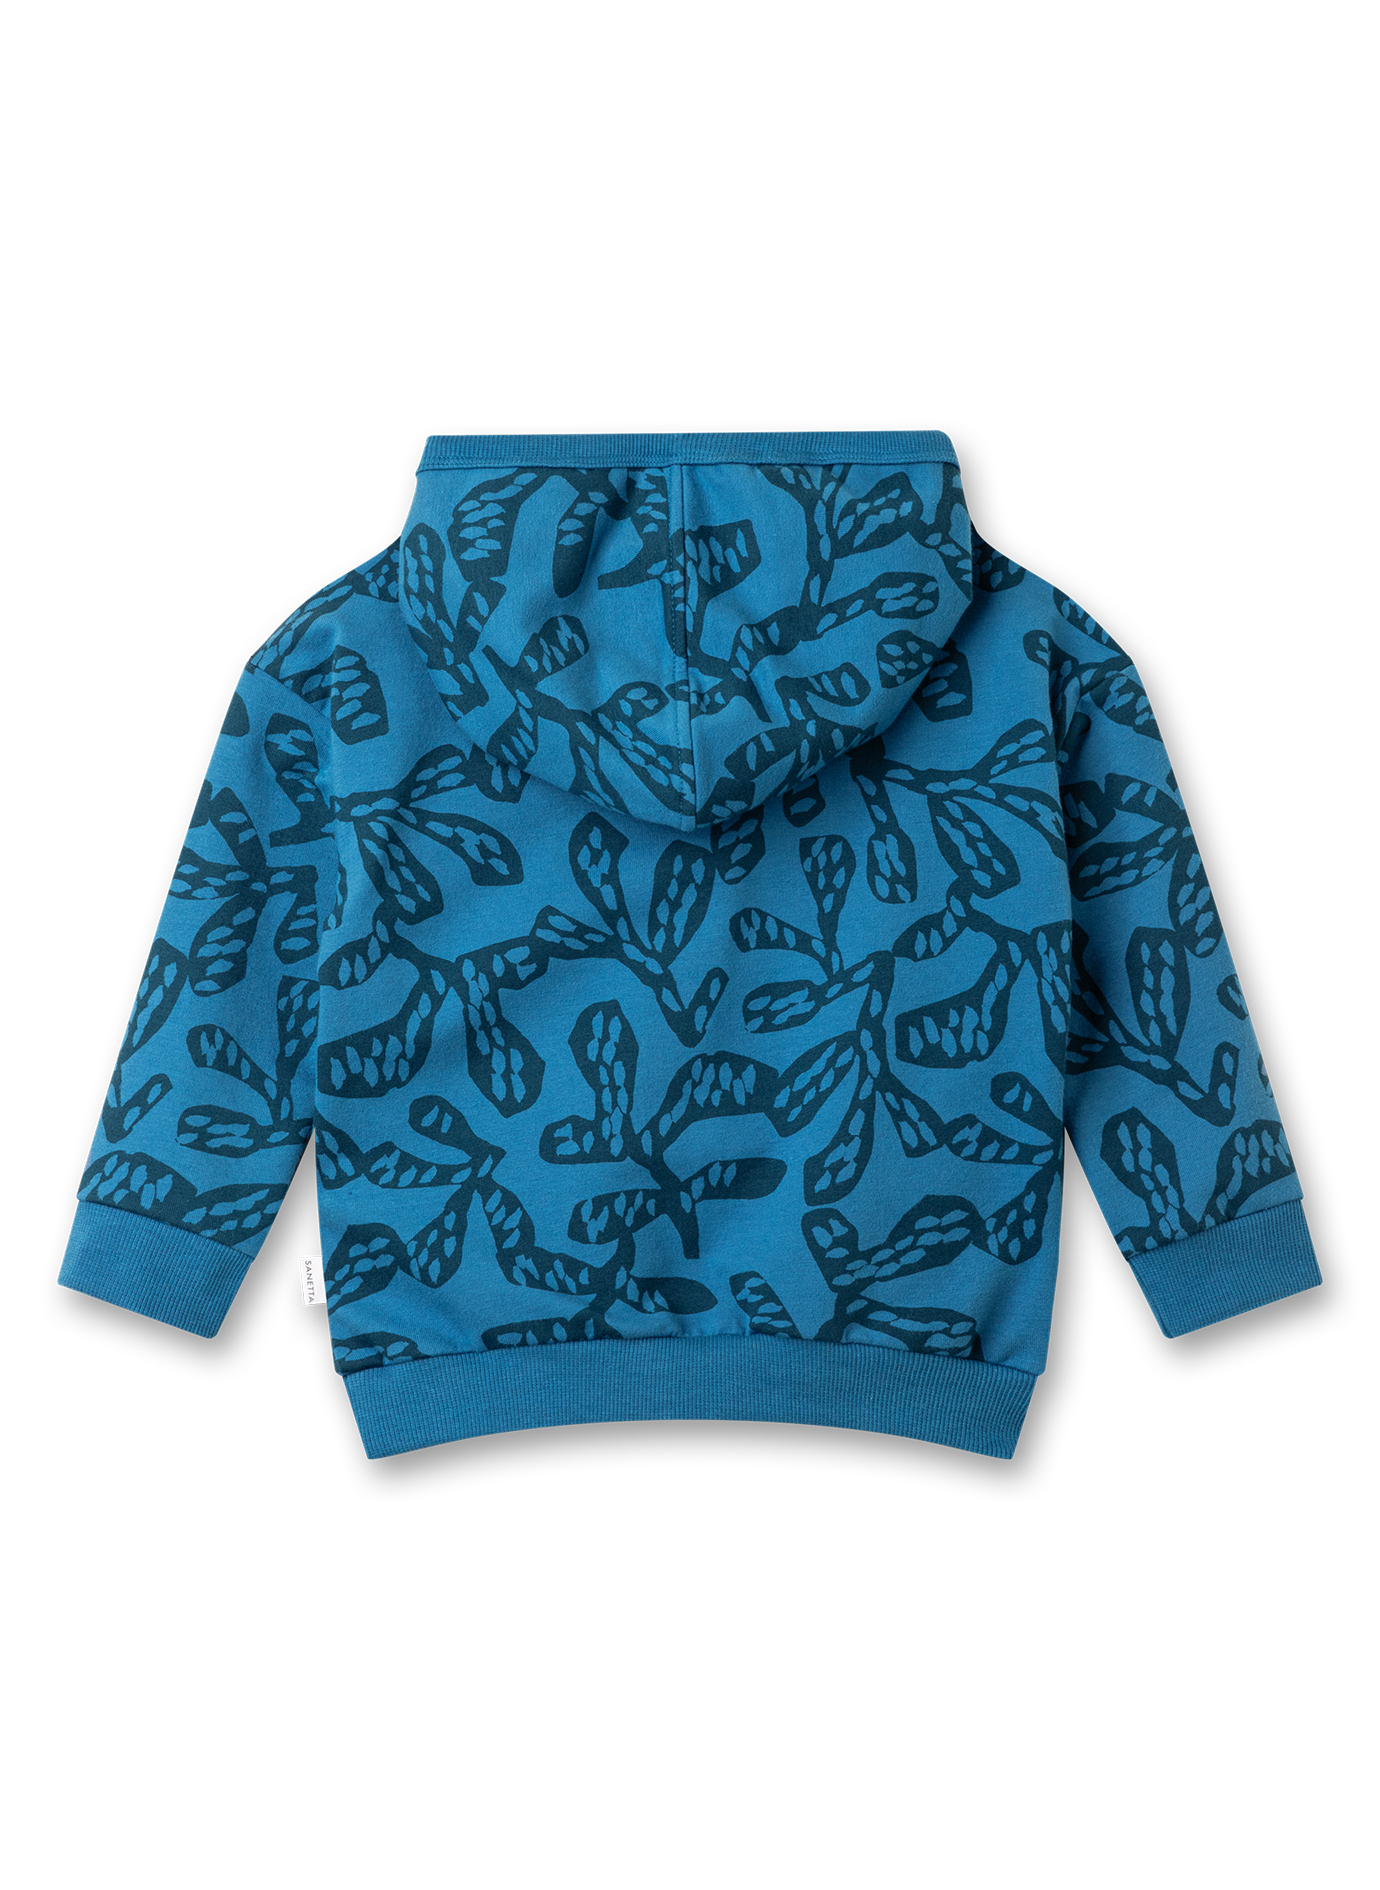 Jungen-Sweatshirt Blau mit Kapuze